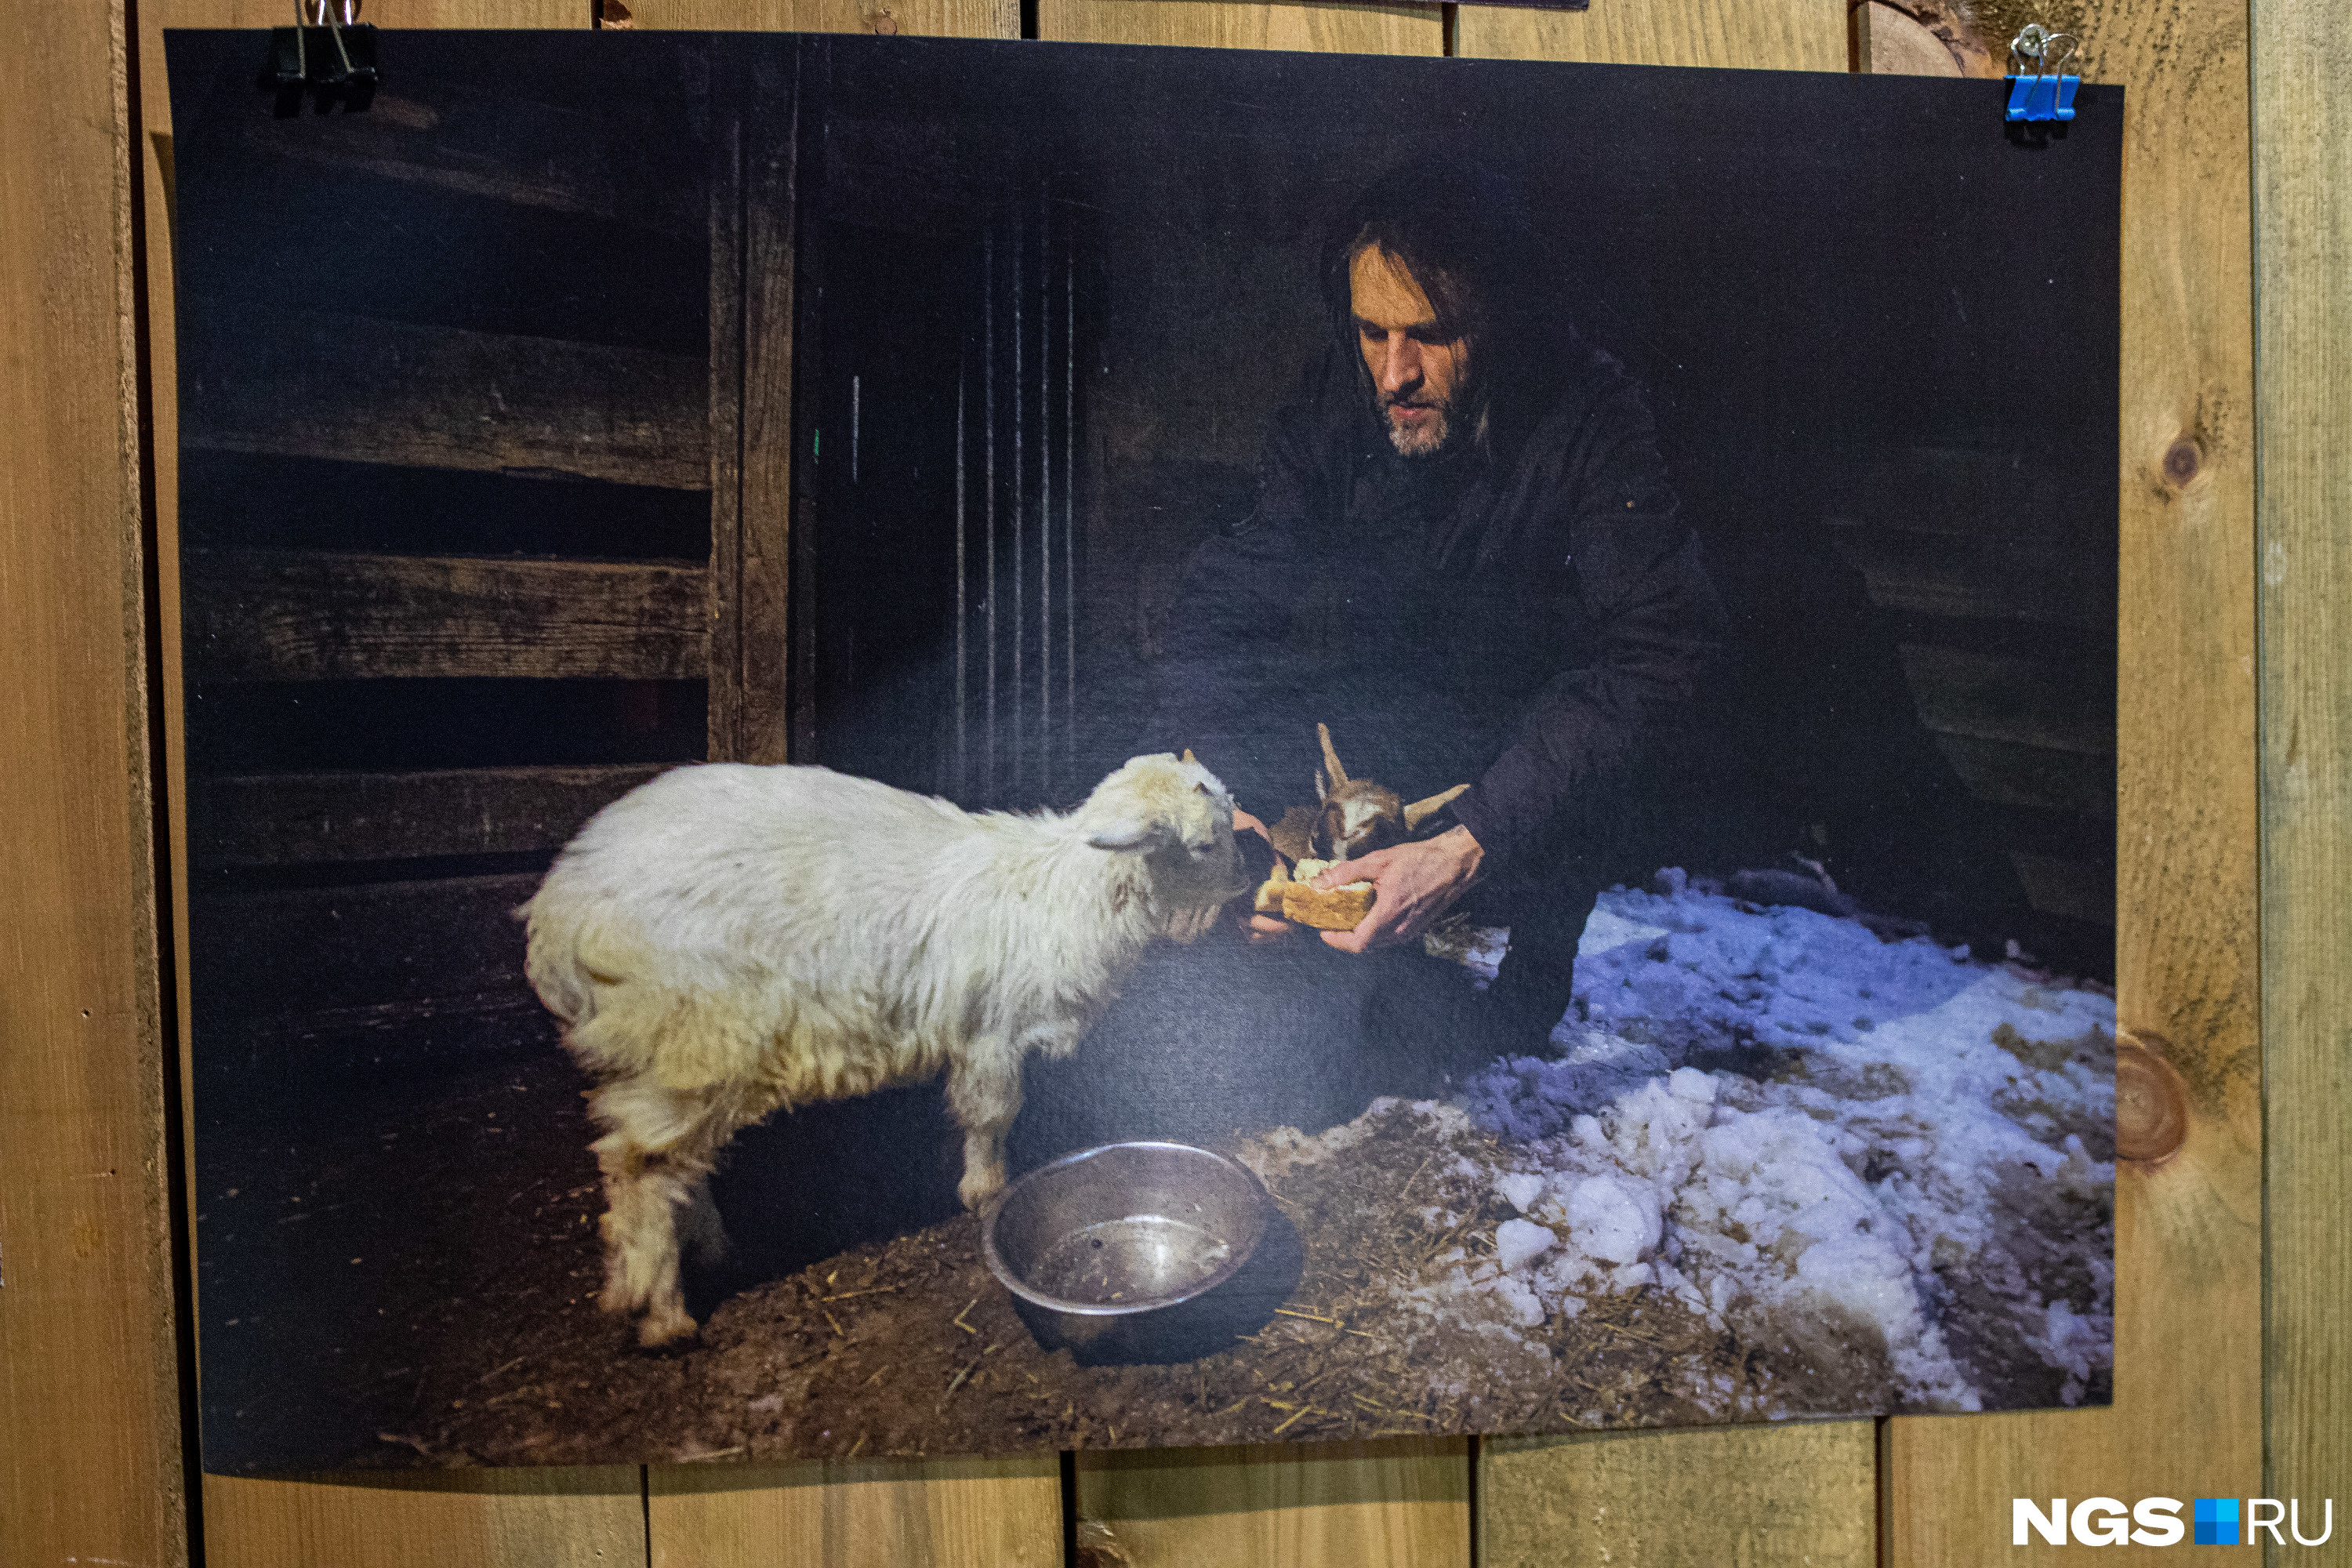 Автор инсталляции Антон Кшнясев кормит фермерских коз объектом современного искусства